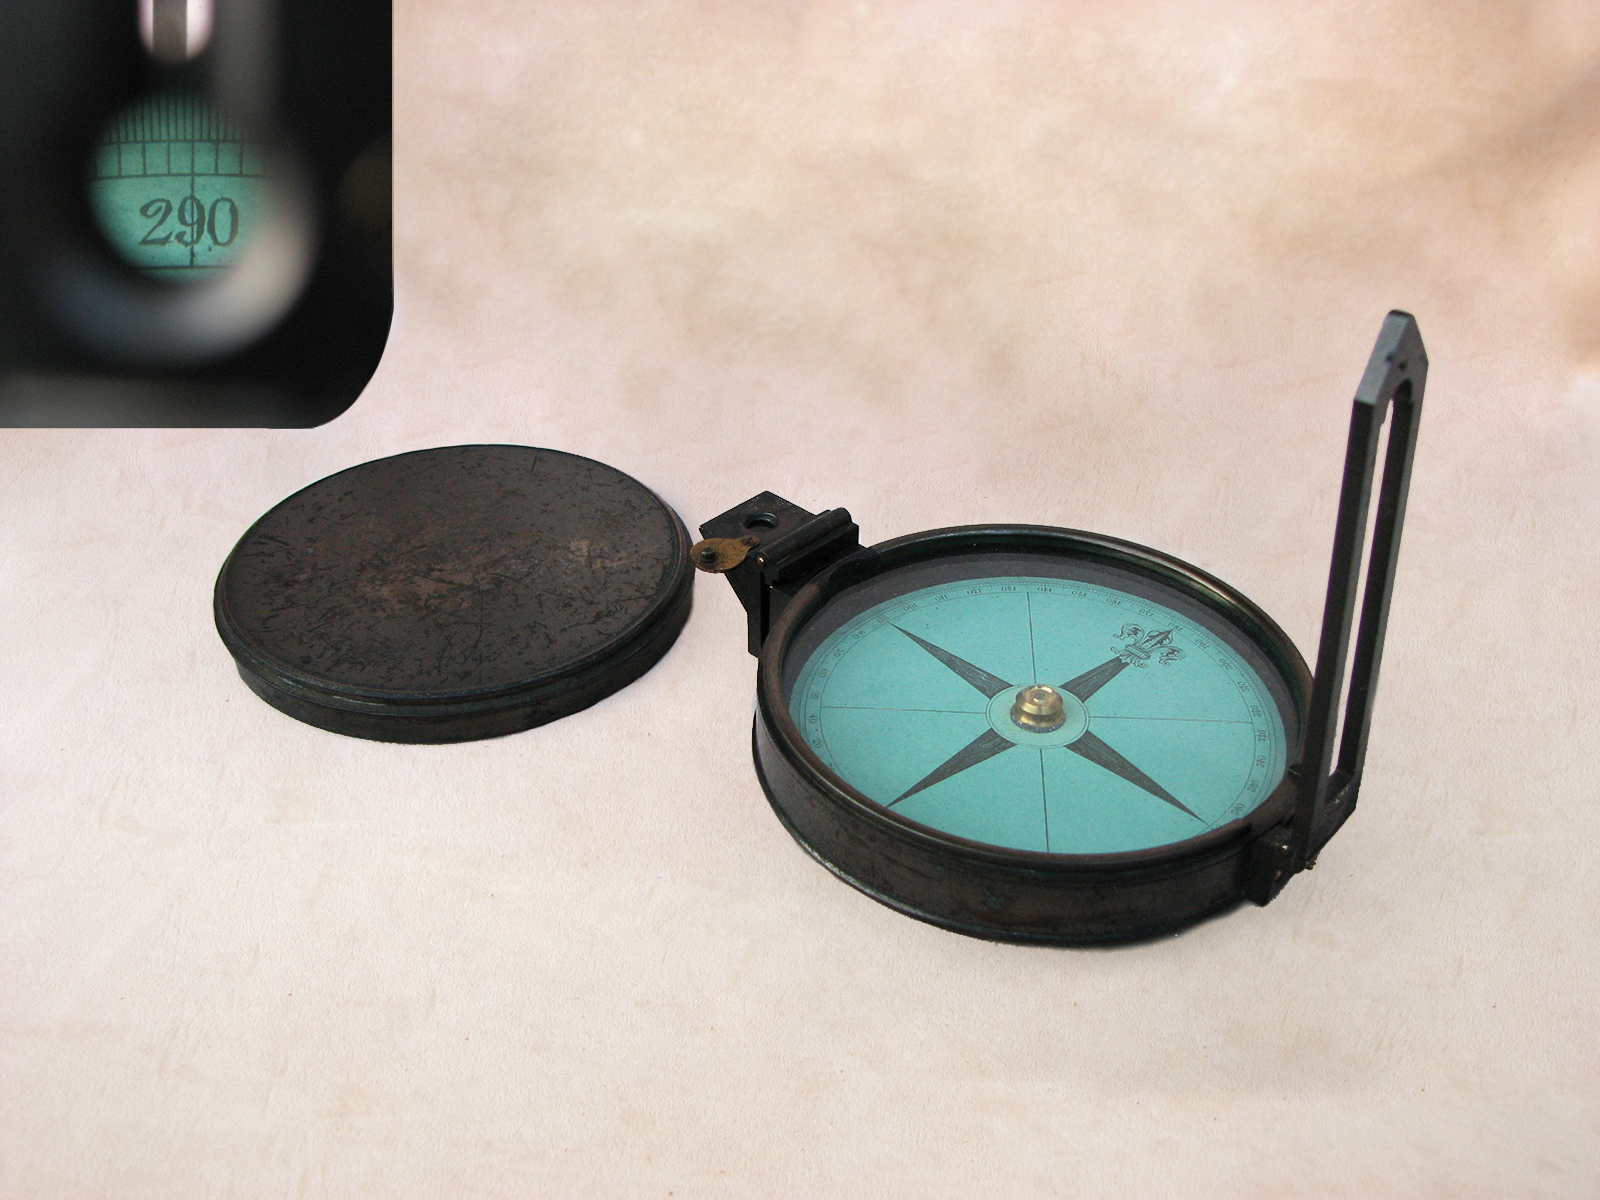 Negretti & Zambra green card prismatic compass, circa 1880